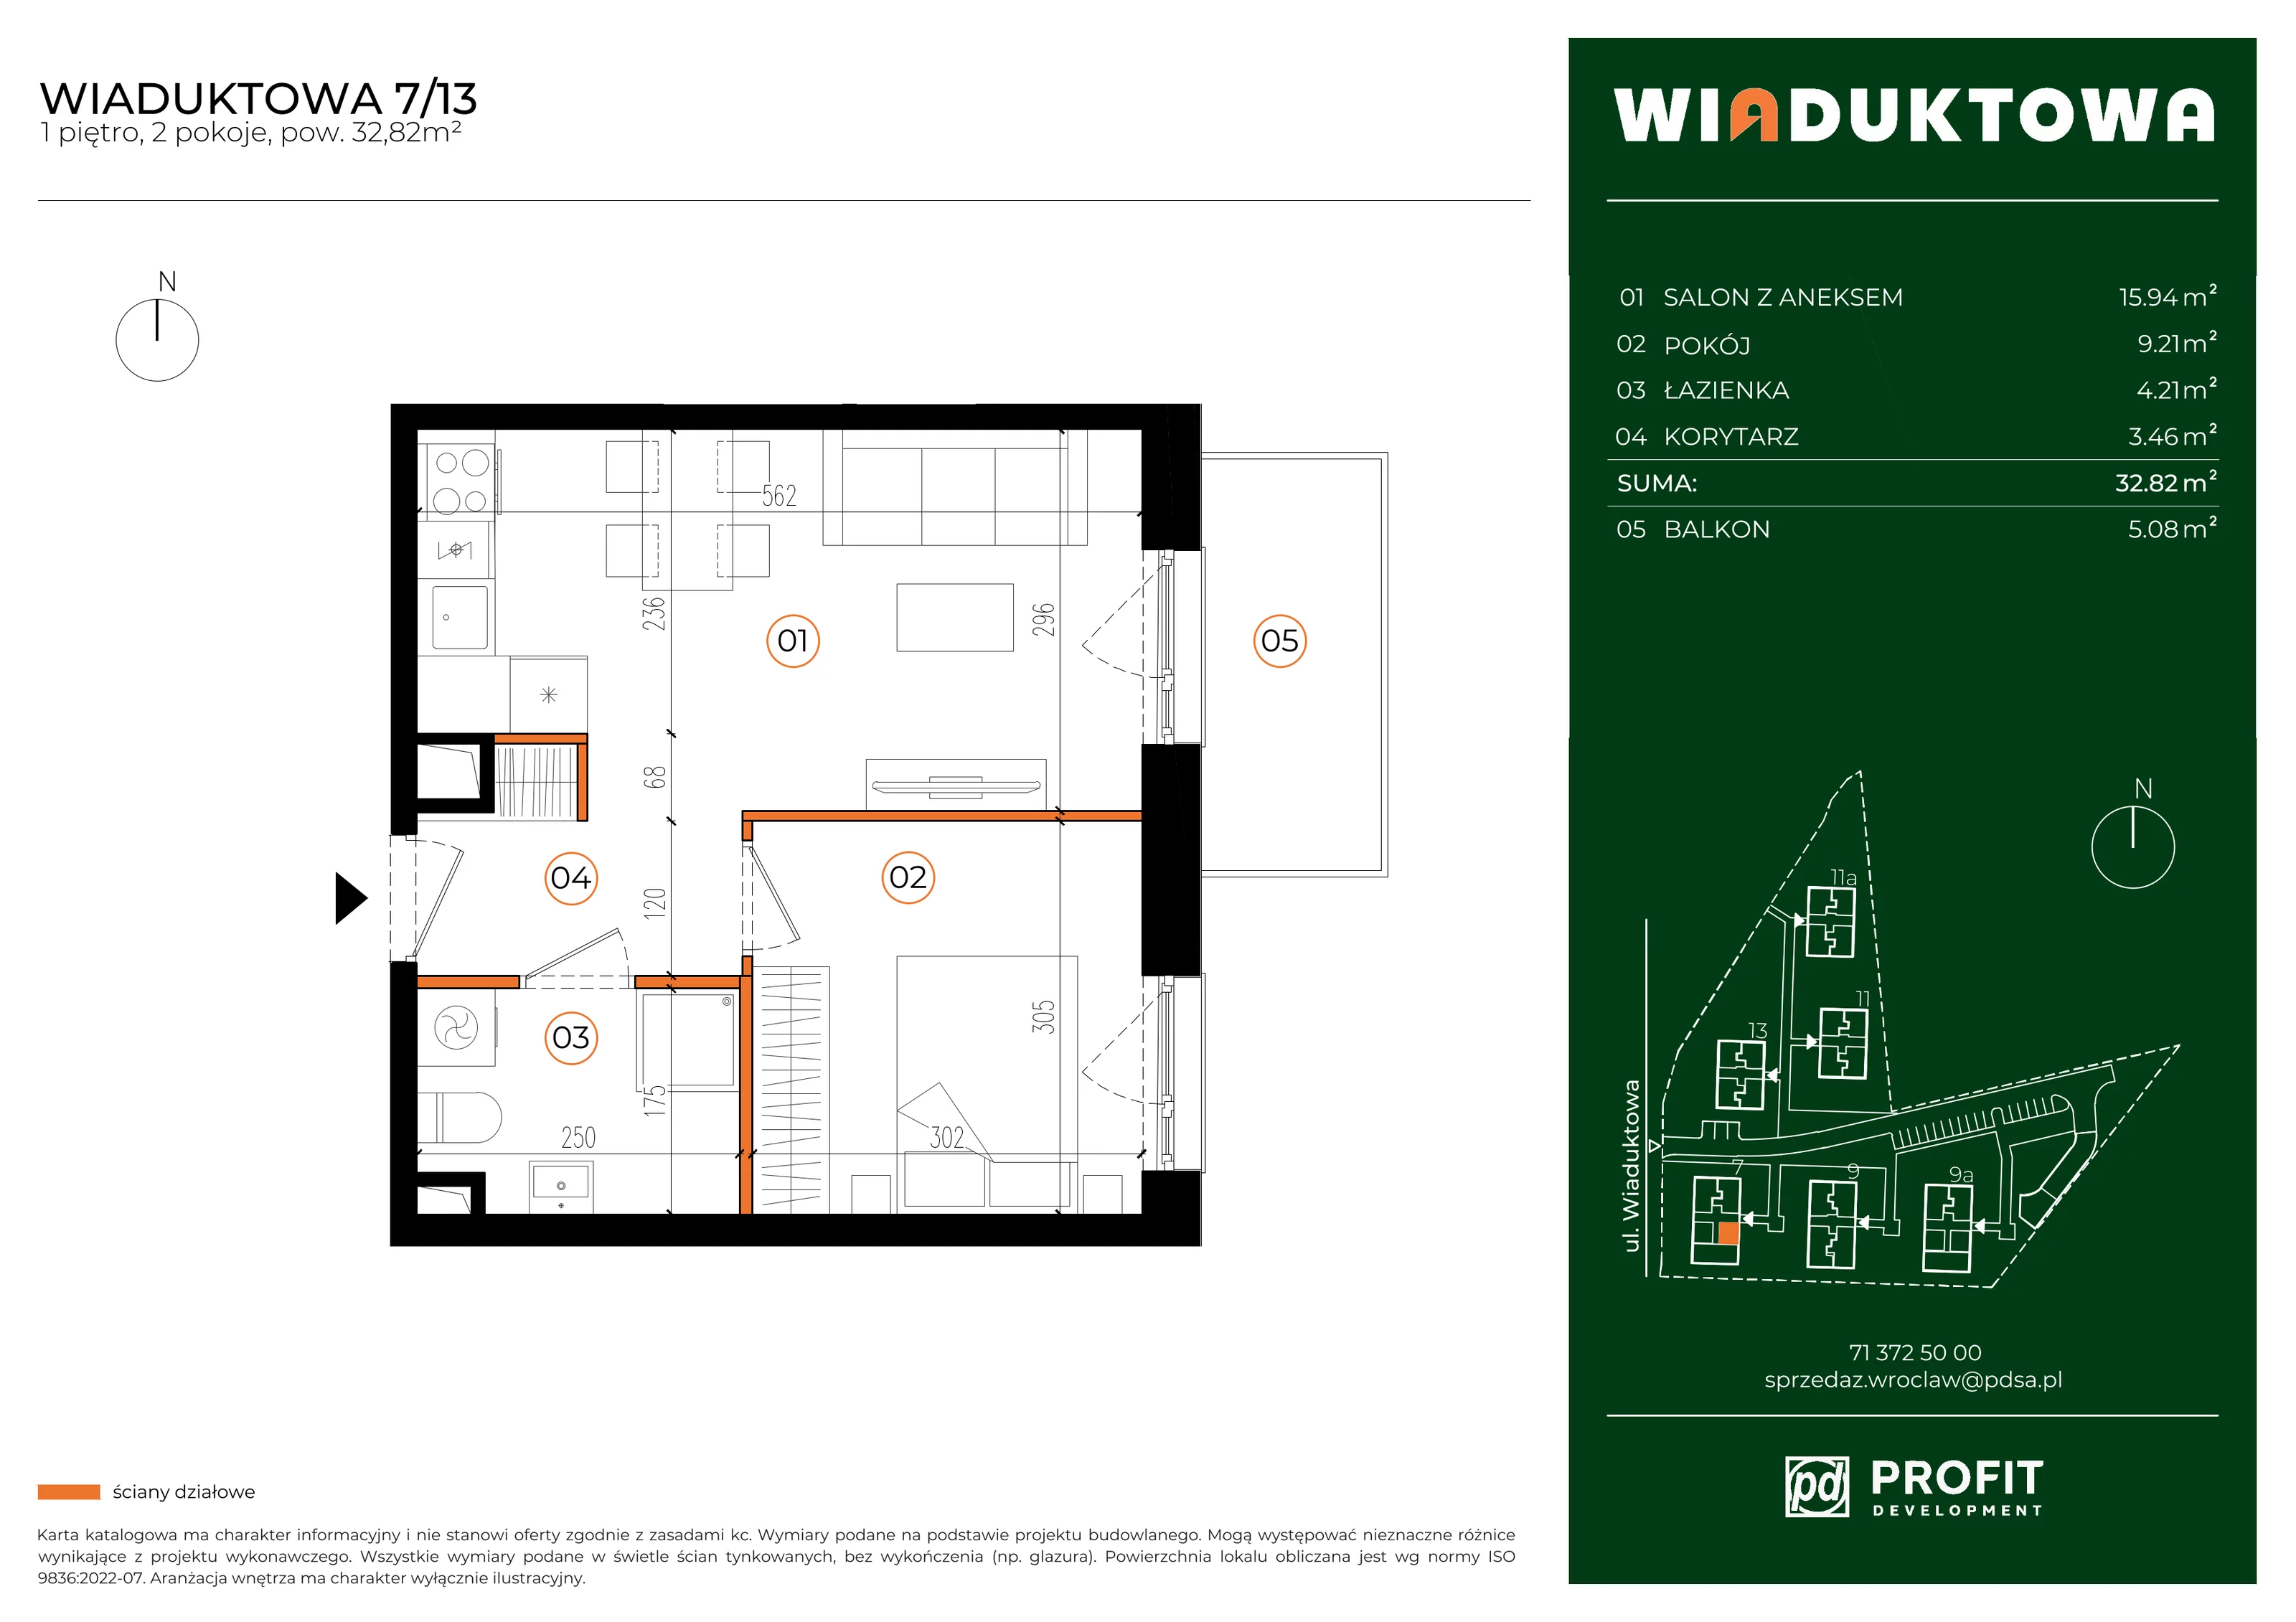 Mieszkanie 32,82 m², piętro 1, oferta nr WI/7/13, Wiaduktowa, Wrocław, Krzyki-Partynice, Krzyki, ul. Wiaduktowa